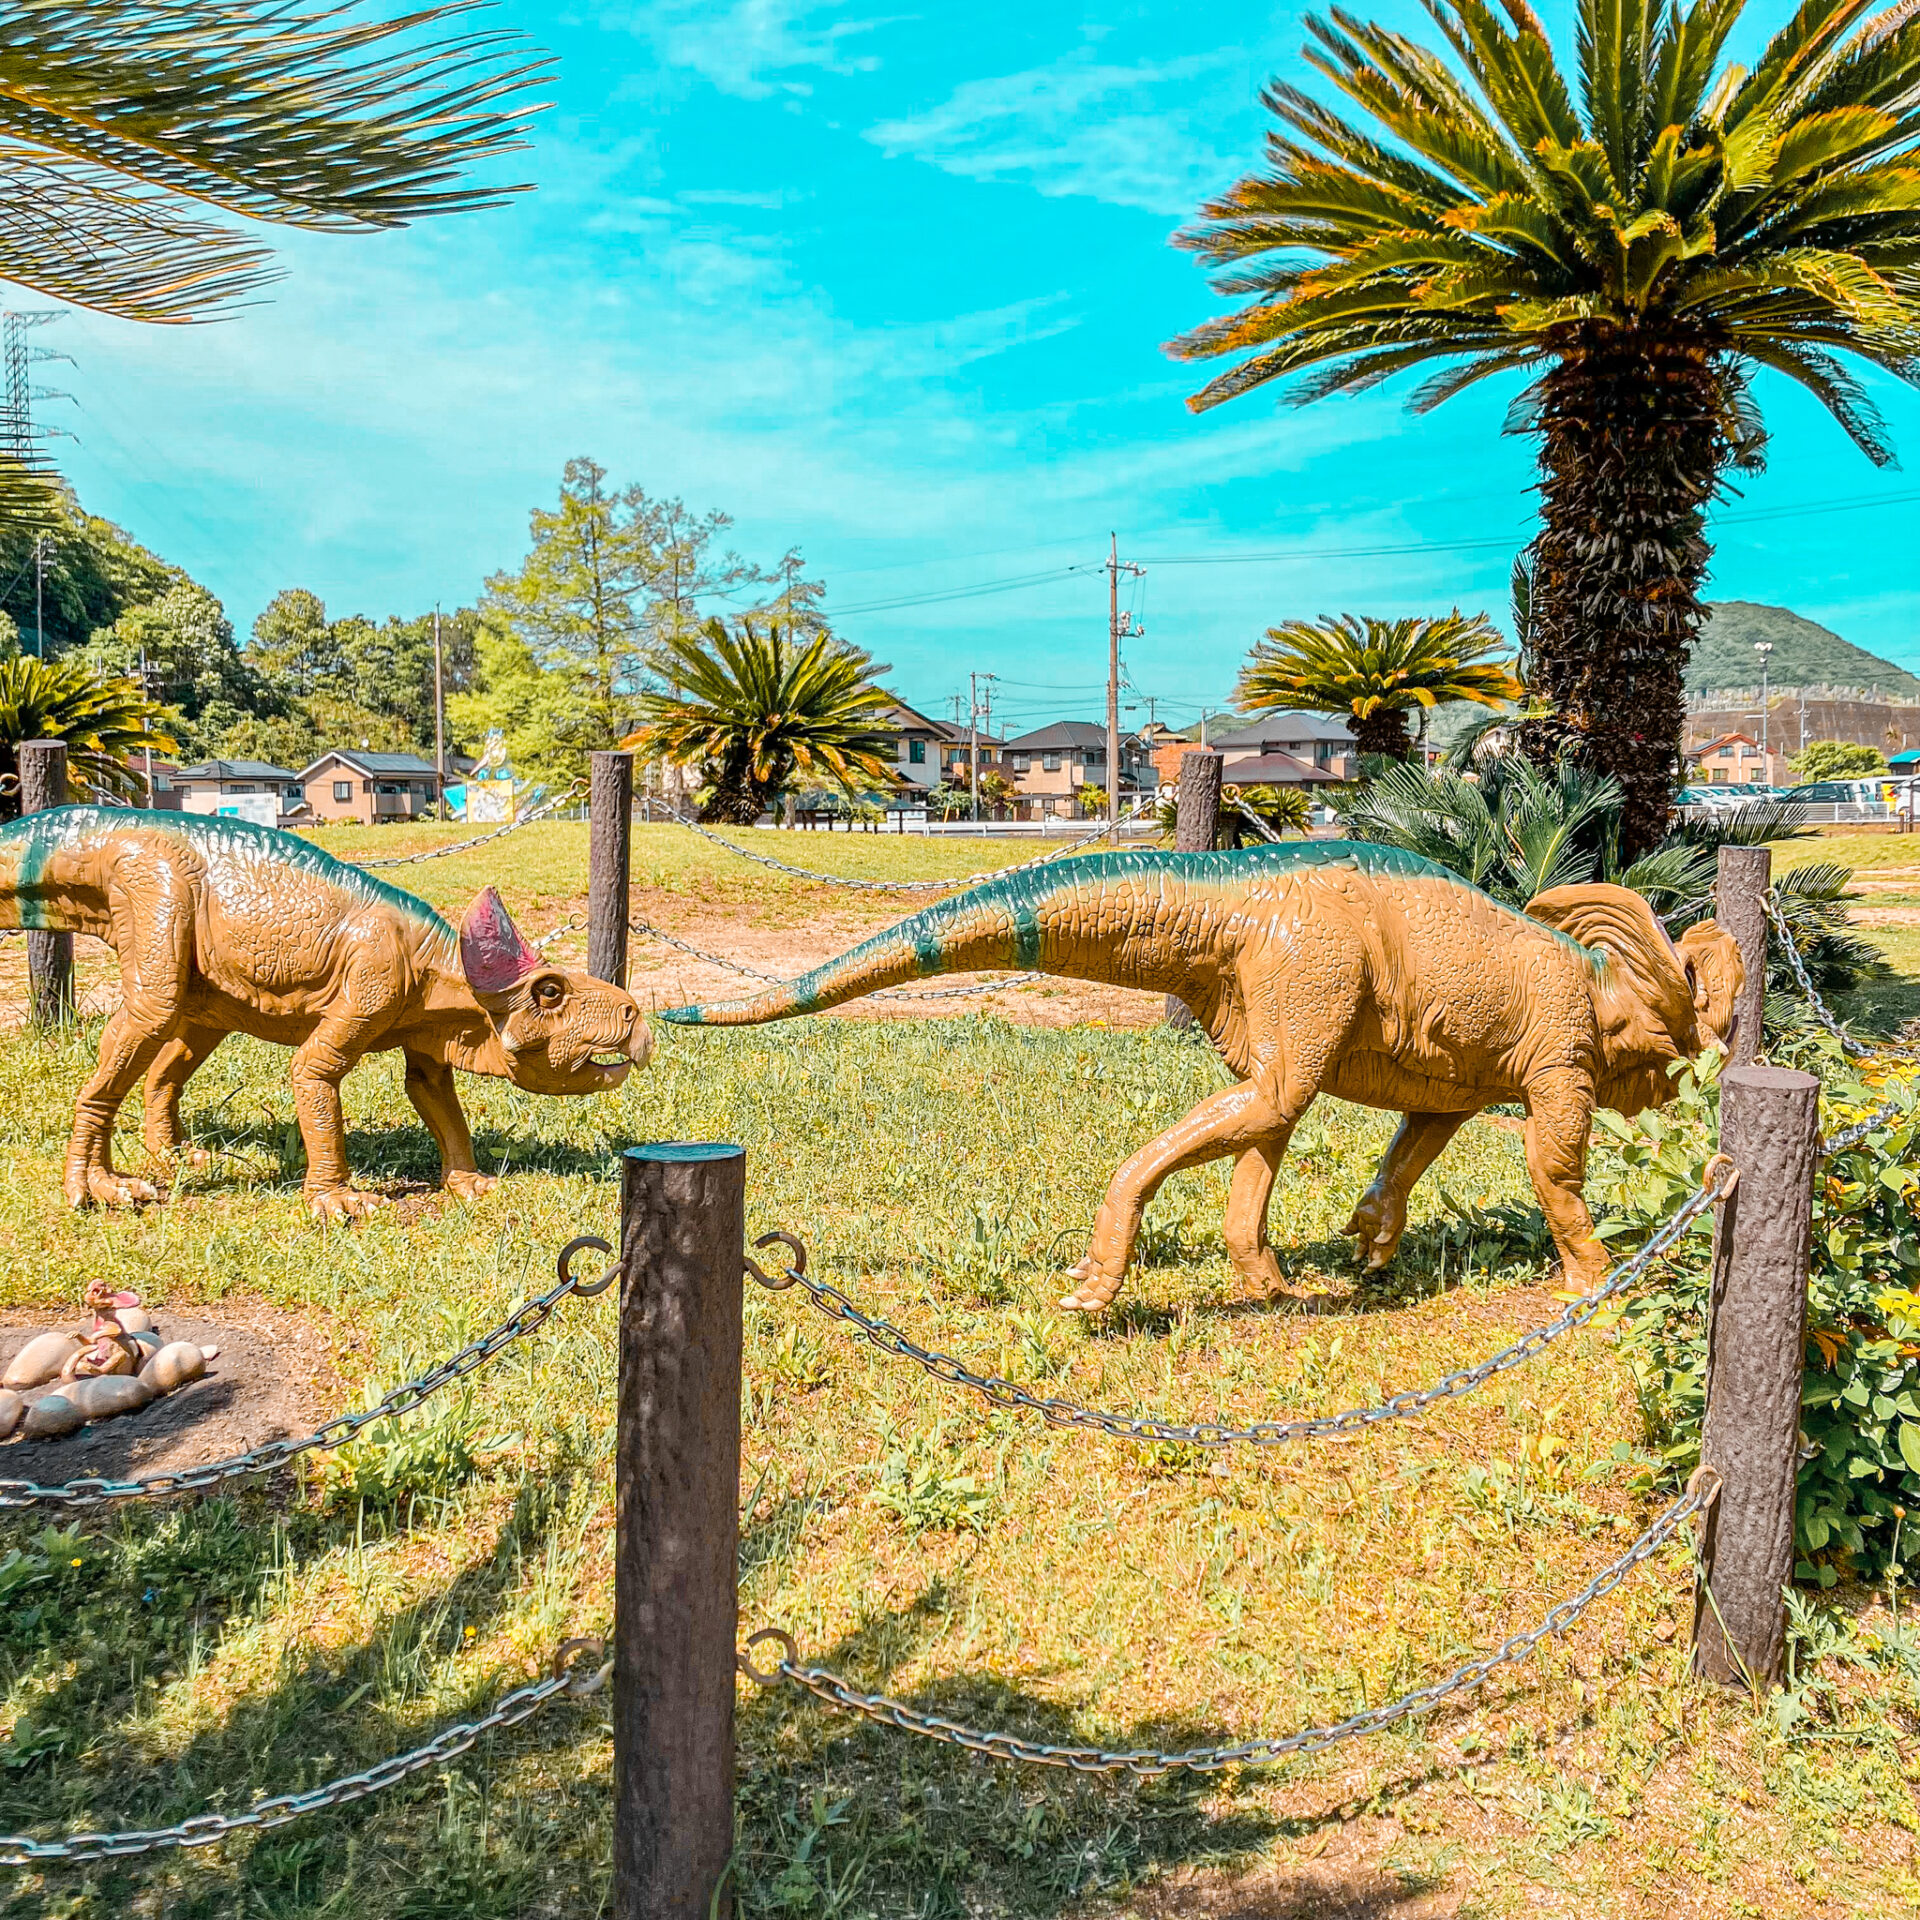 恐竜公園
恐竜６